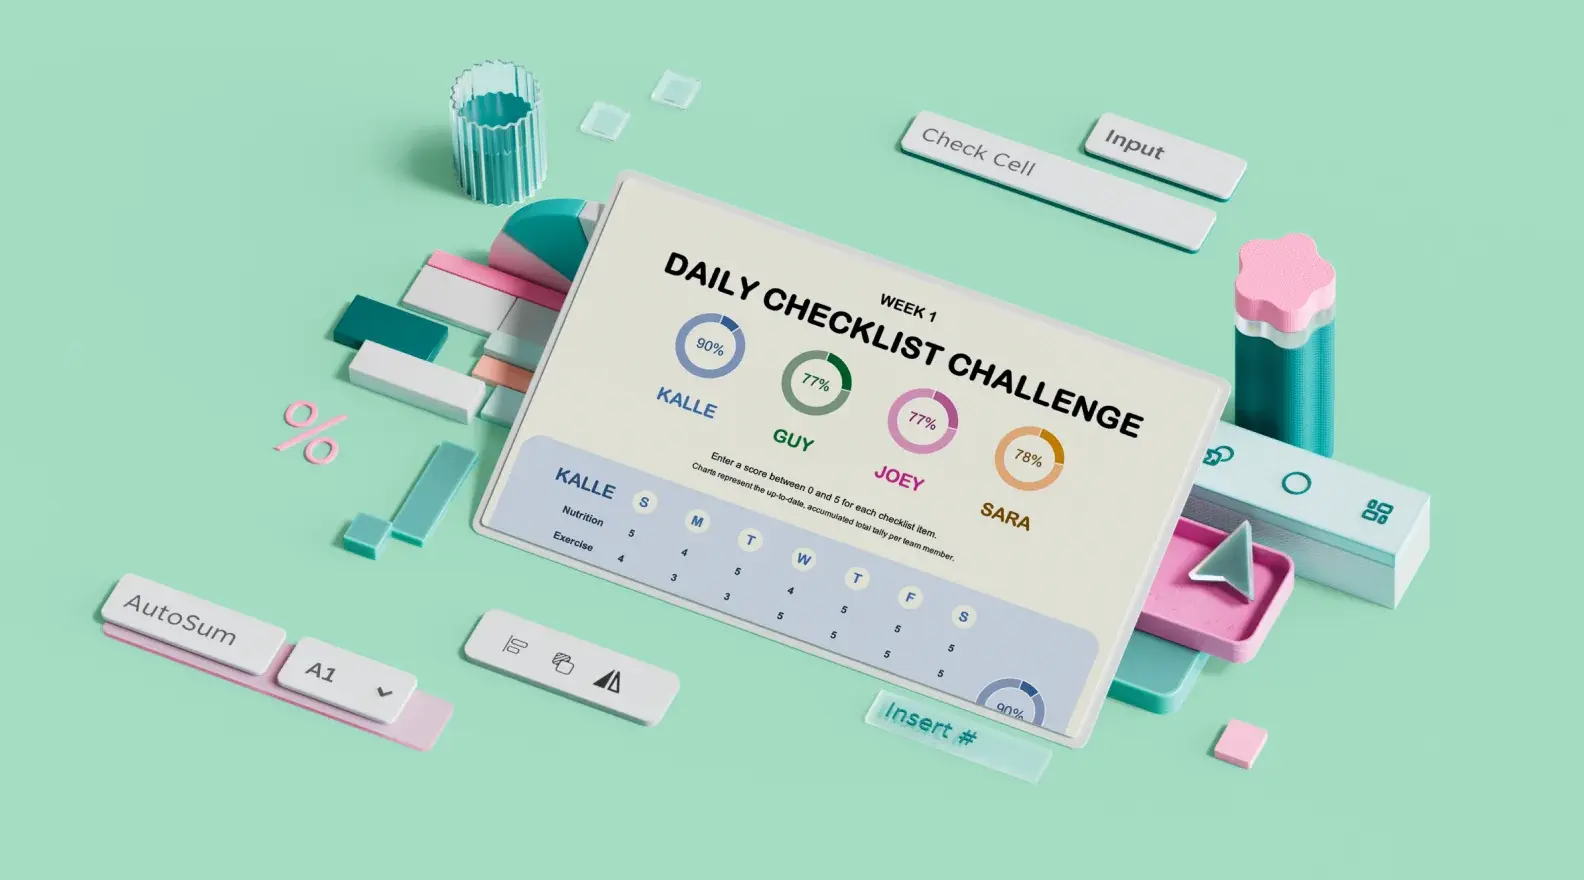 Predložak popisa za dnevno praćenje zdravlja okružen 3D elementima dizajna